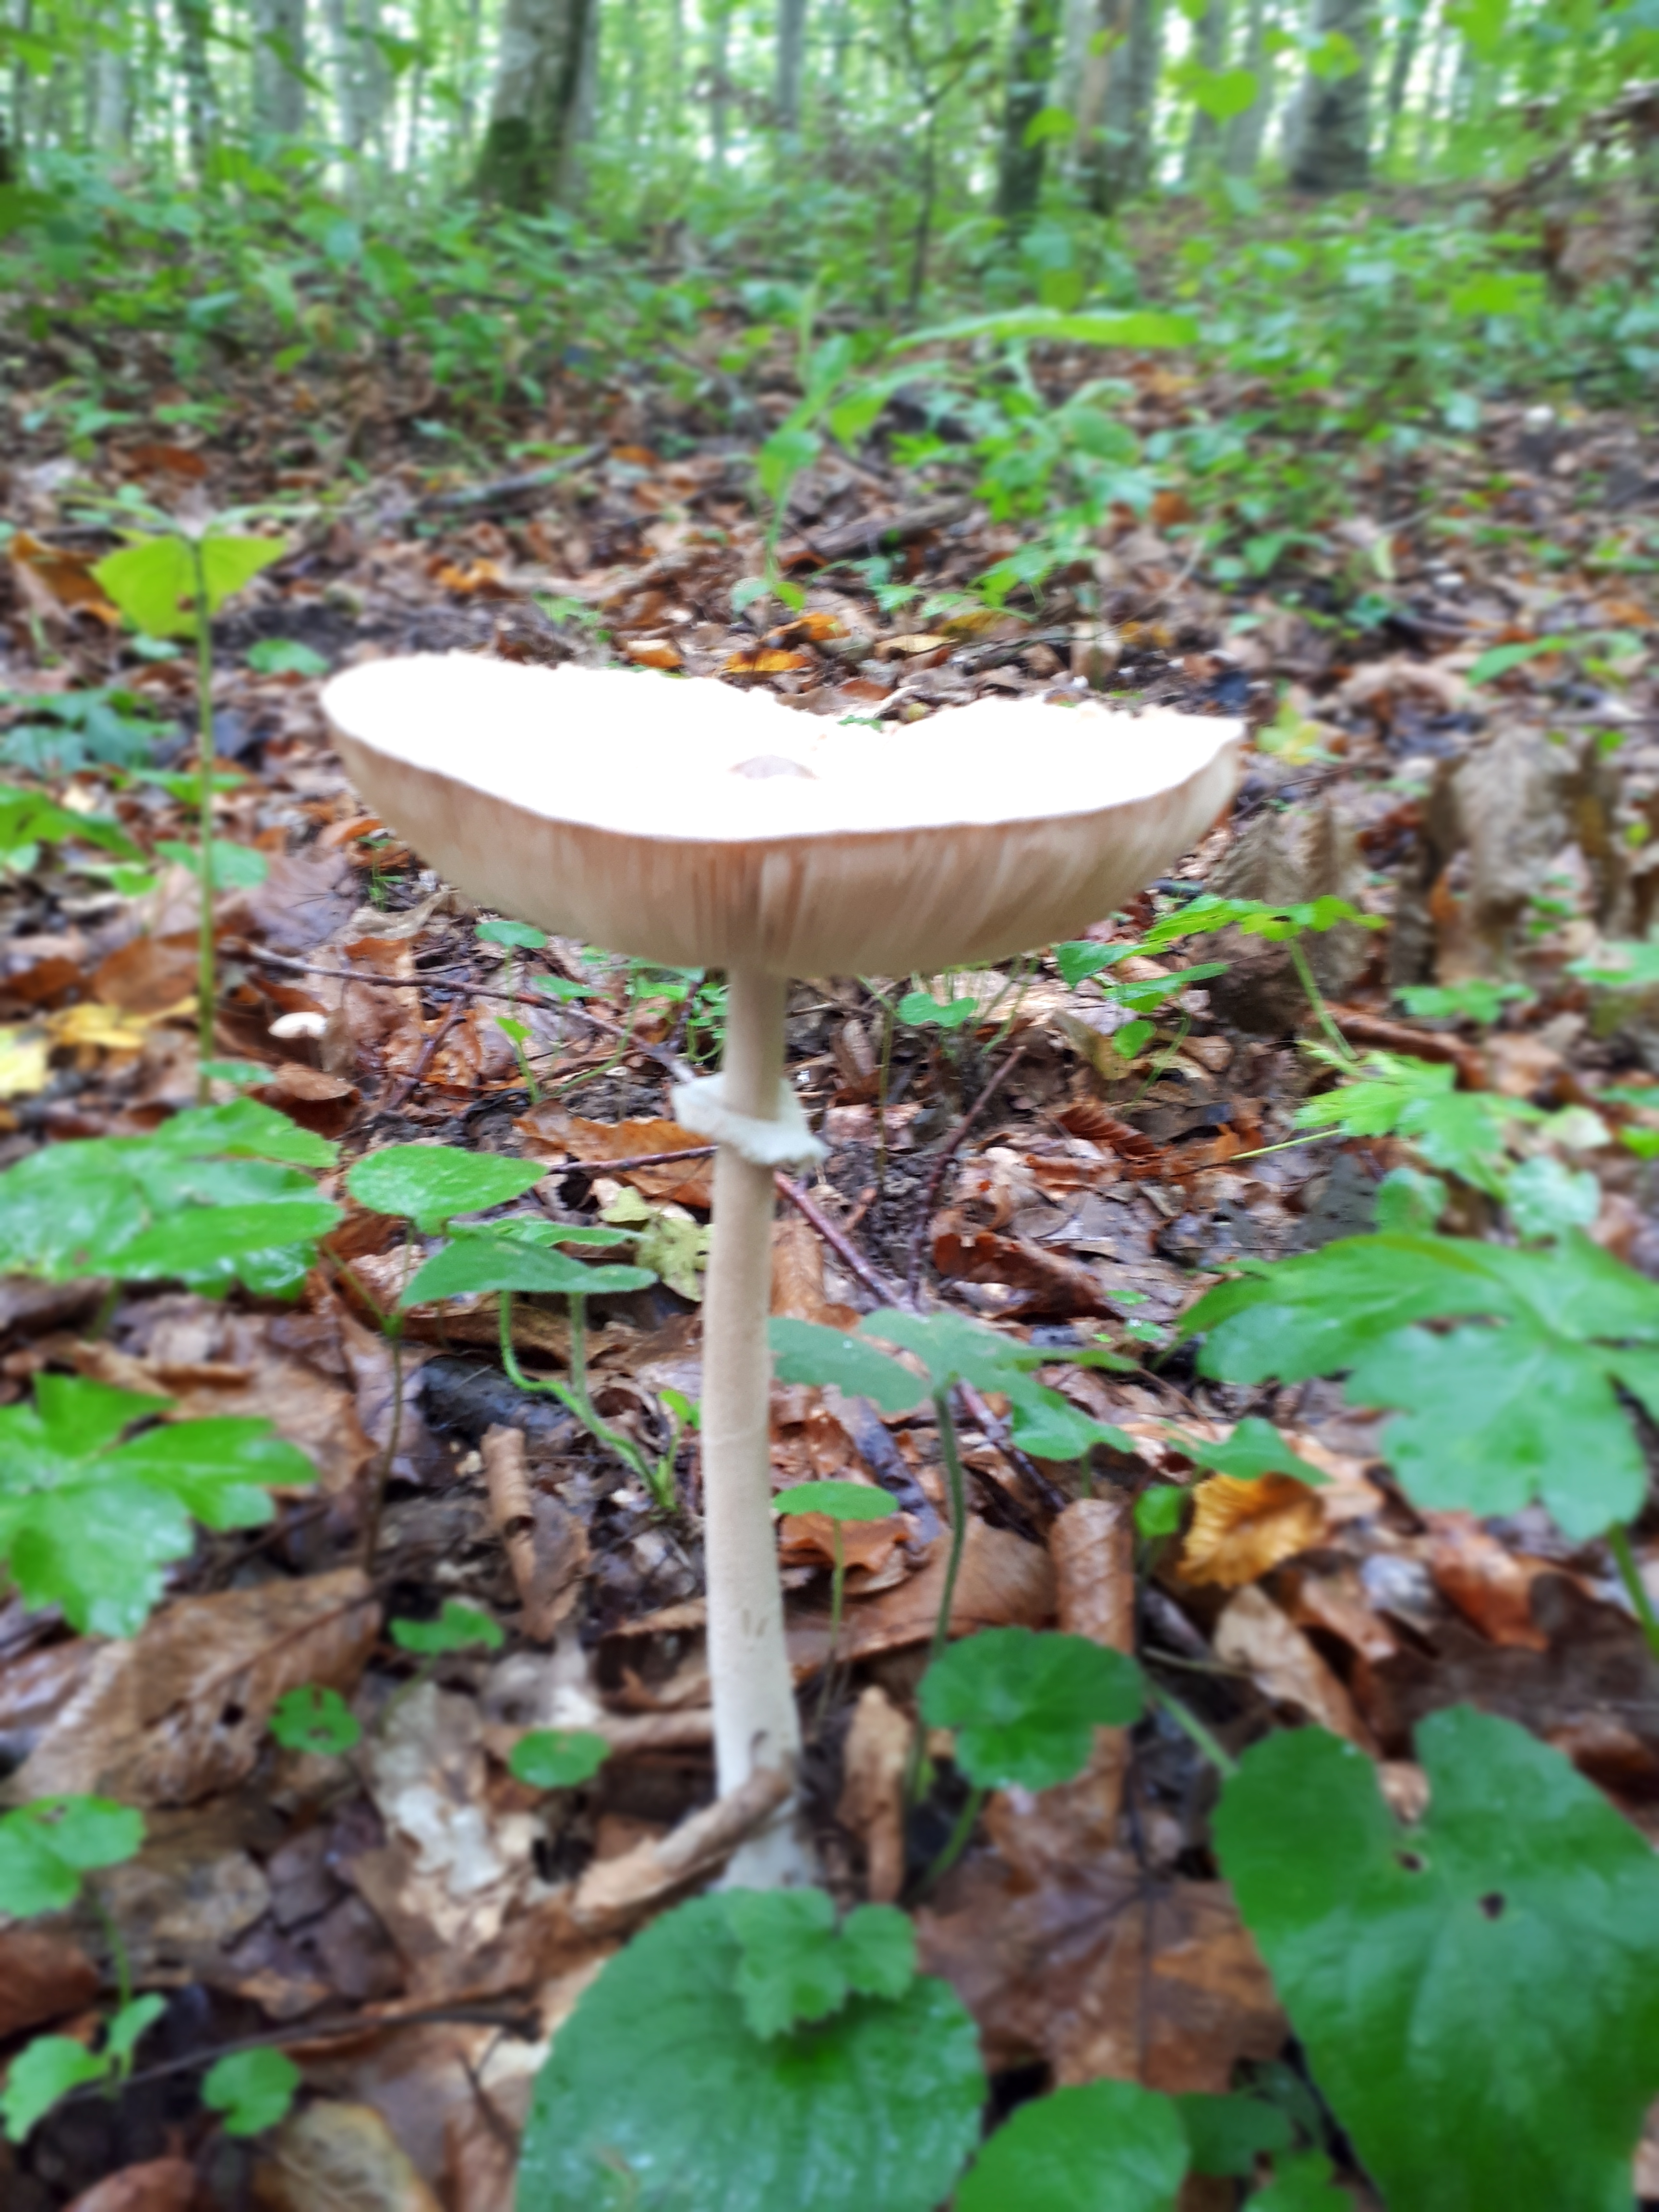 Ядовитые грибы Краснодарского